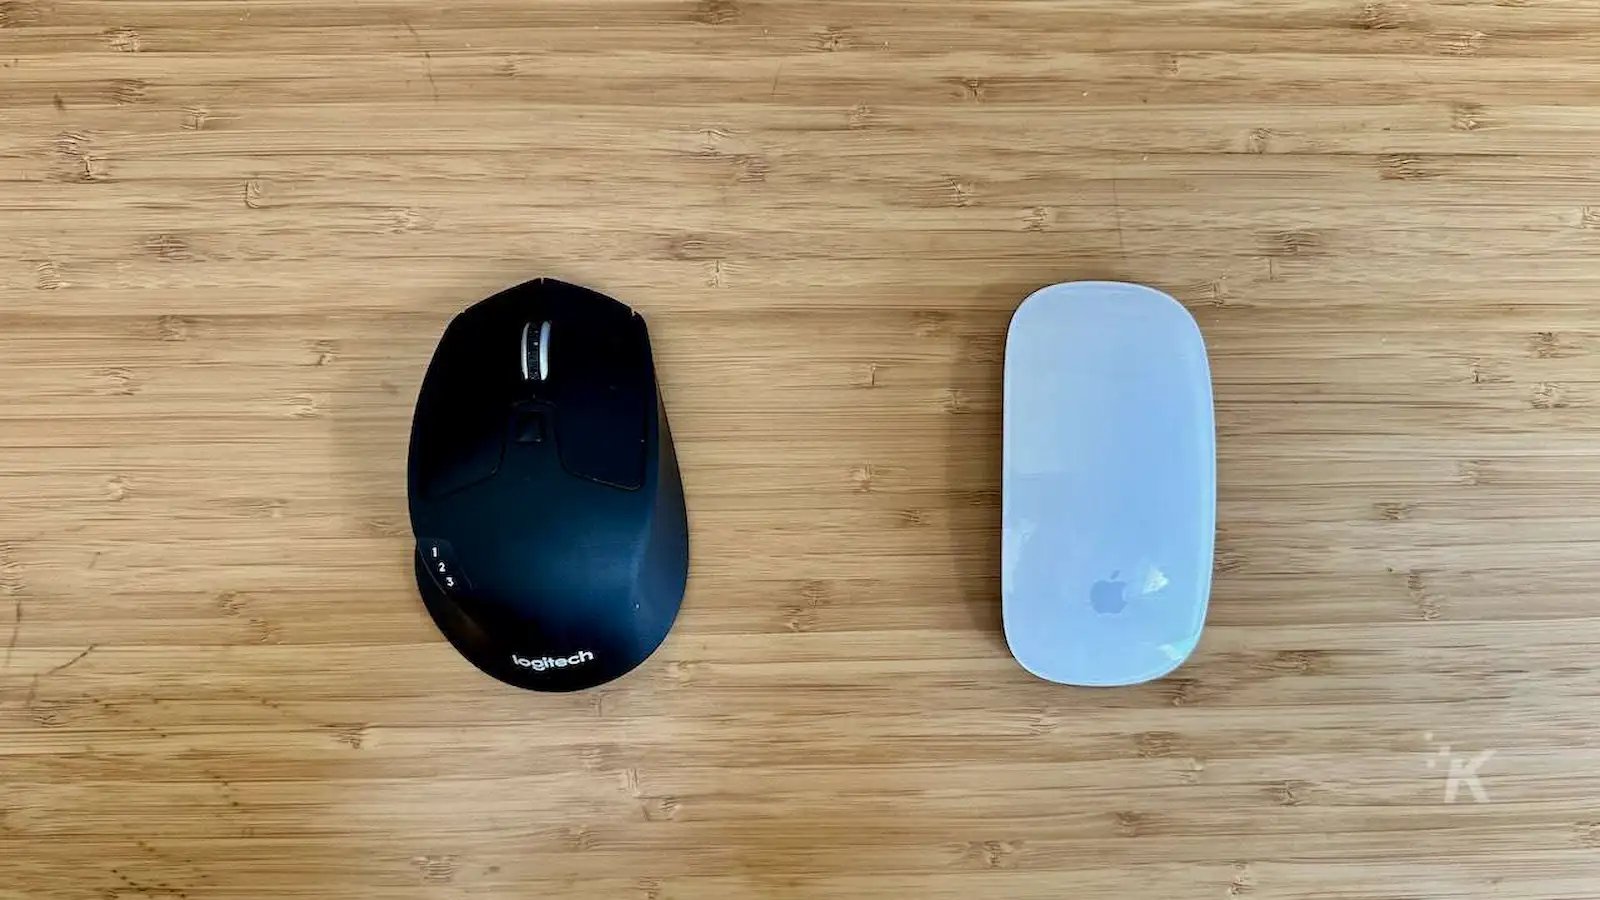 Мышь Logitech против мыши Apple Magic Mouse на офисном столе